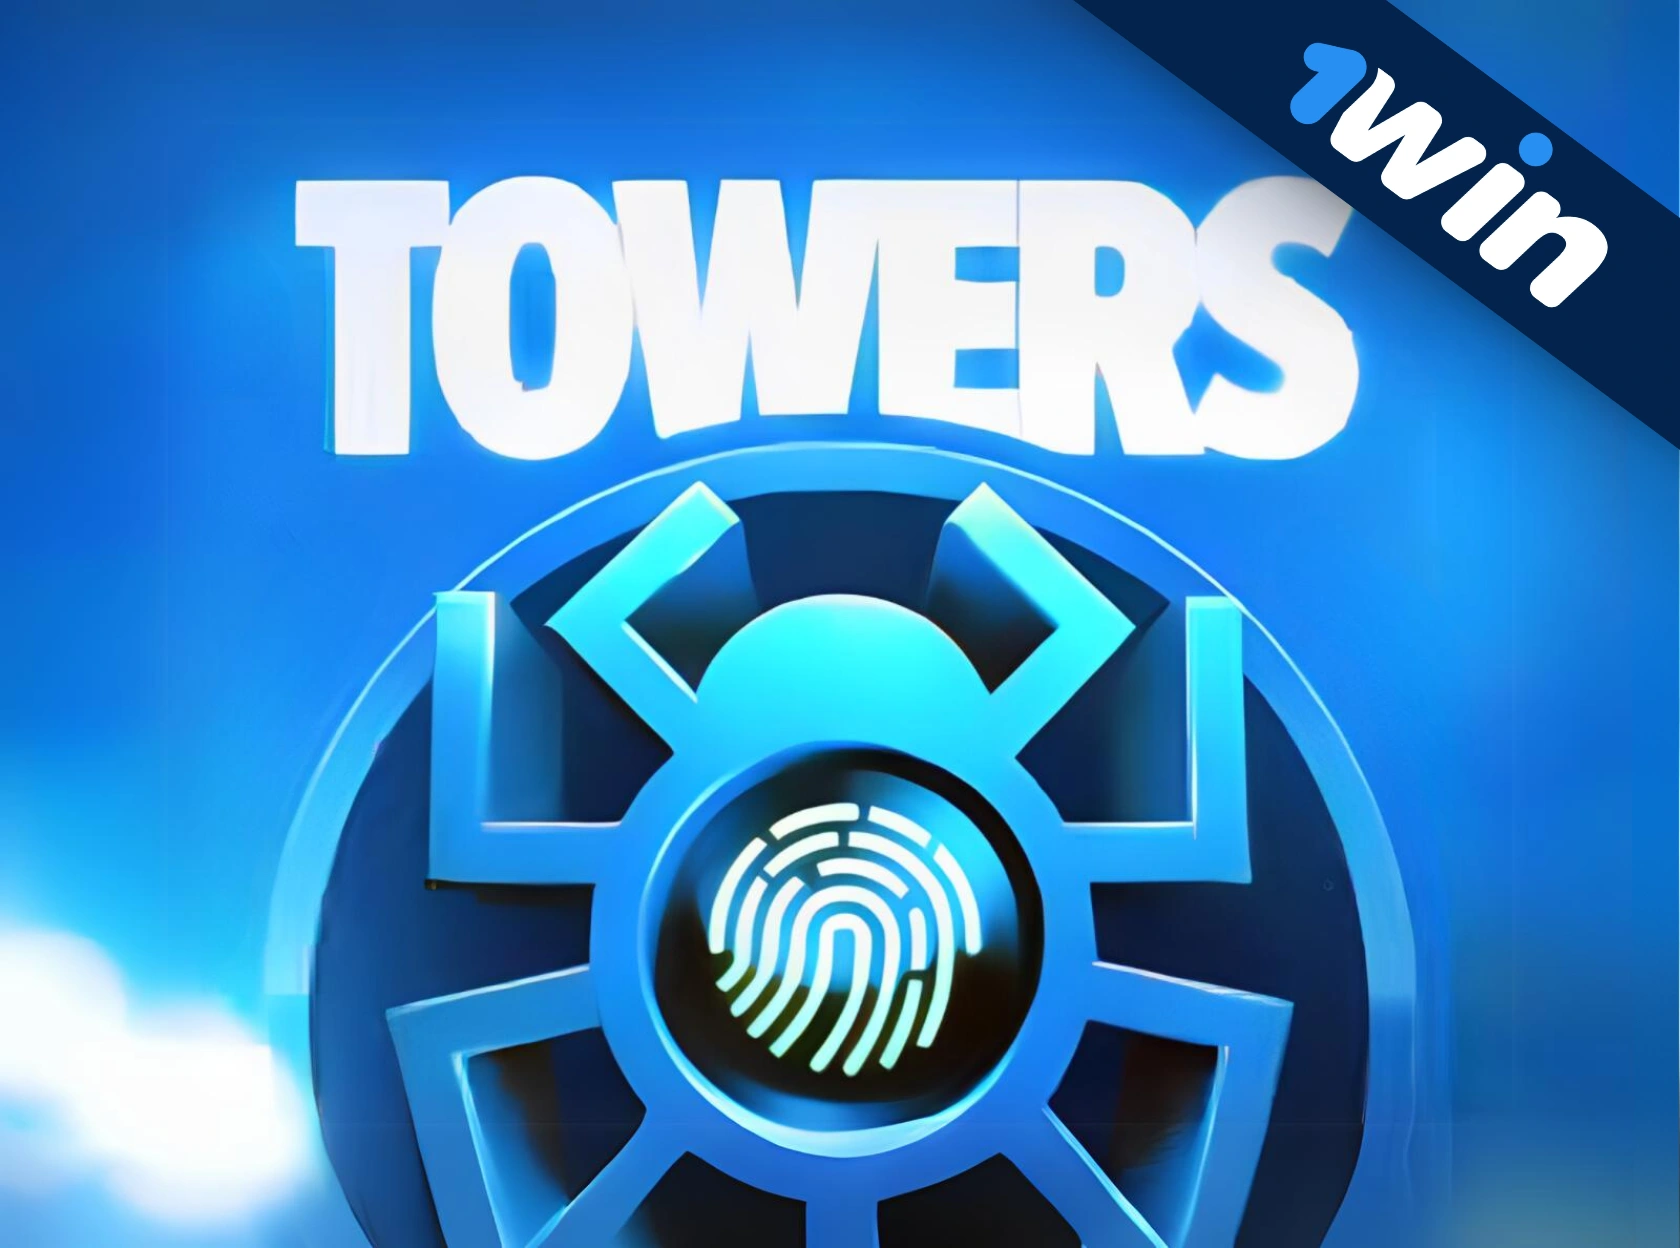 Towers 1win - игра на деньги играть онлайн